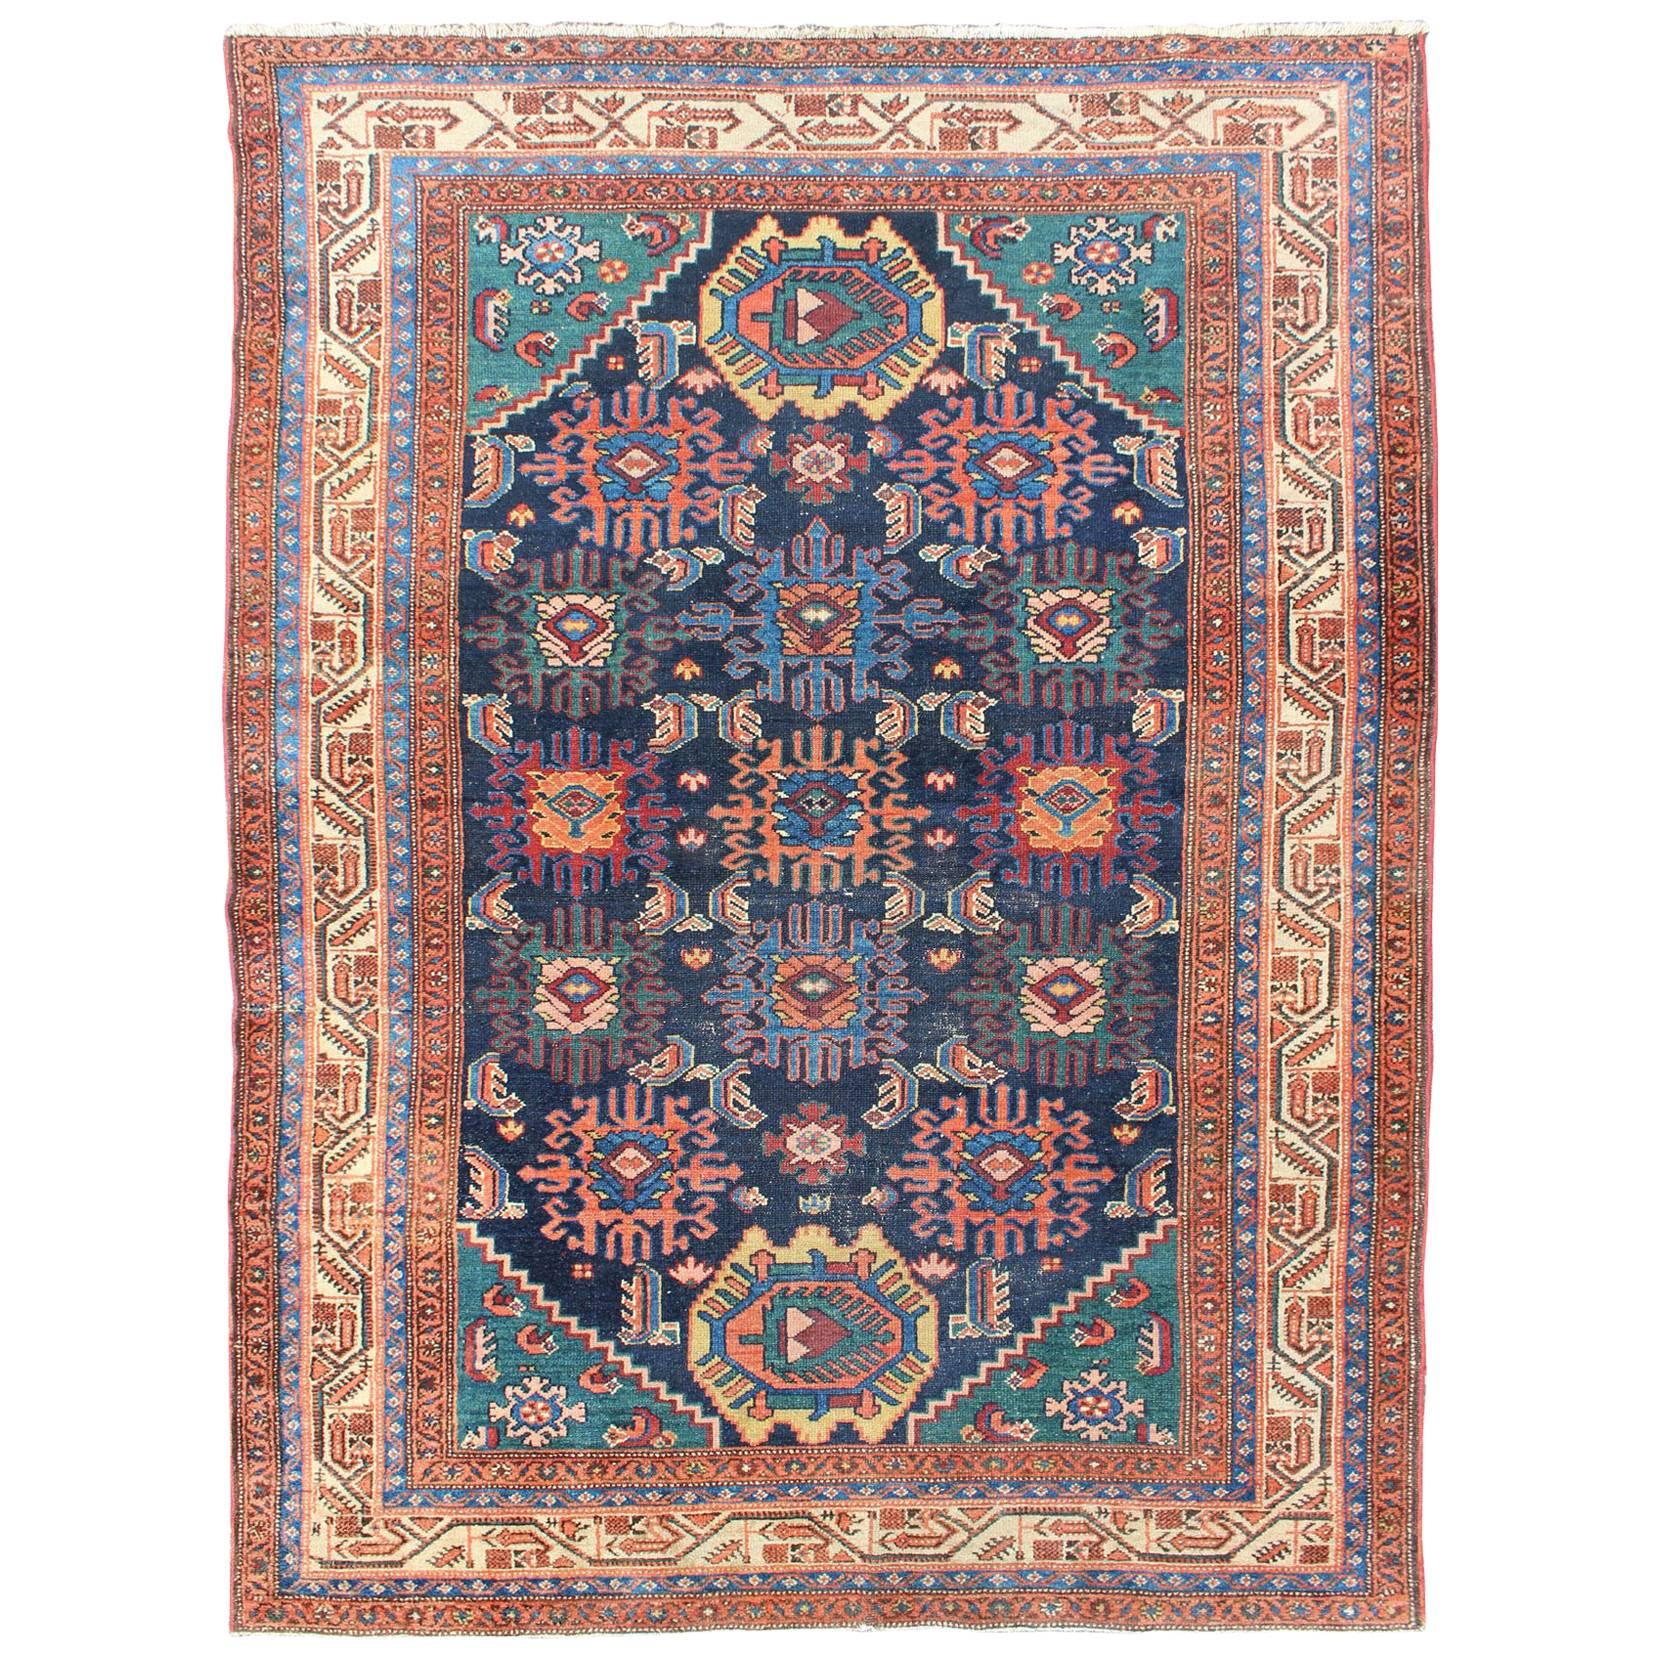 Tapis persan ancien Malayer avec un design sub géométrique coloré sur toute sa surface